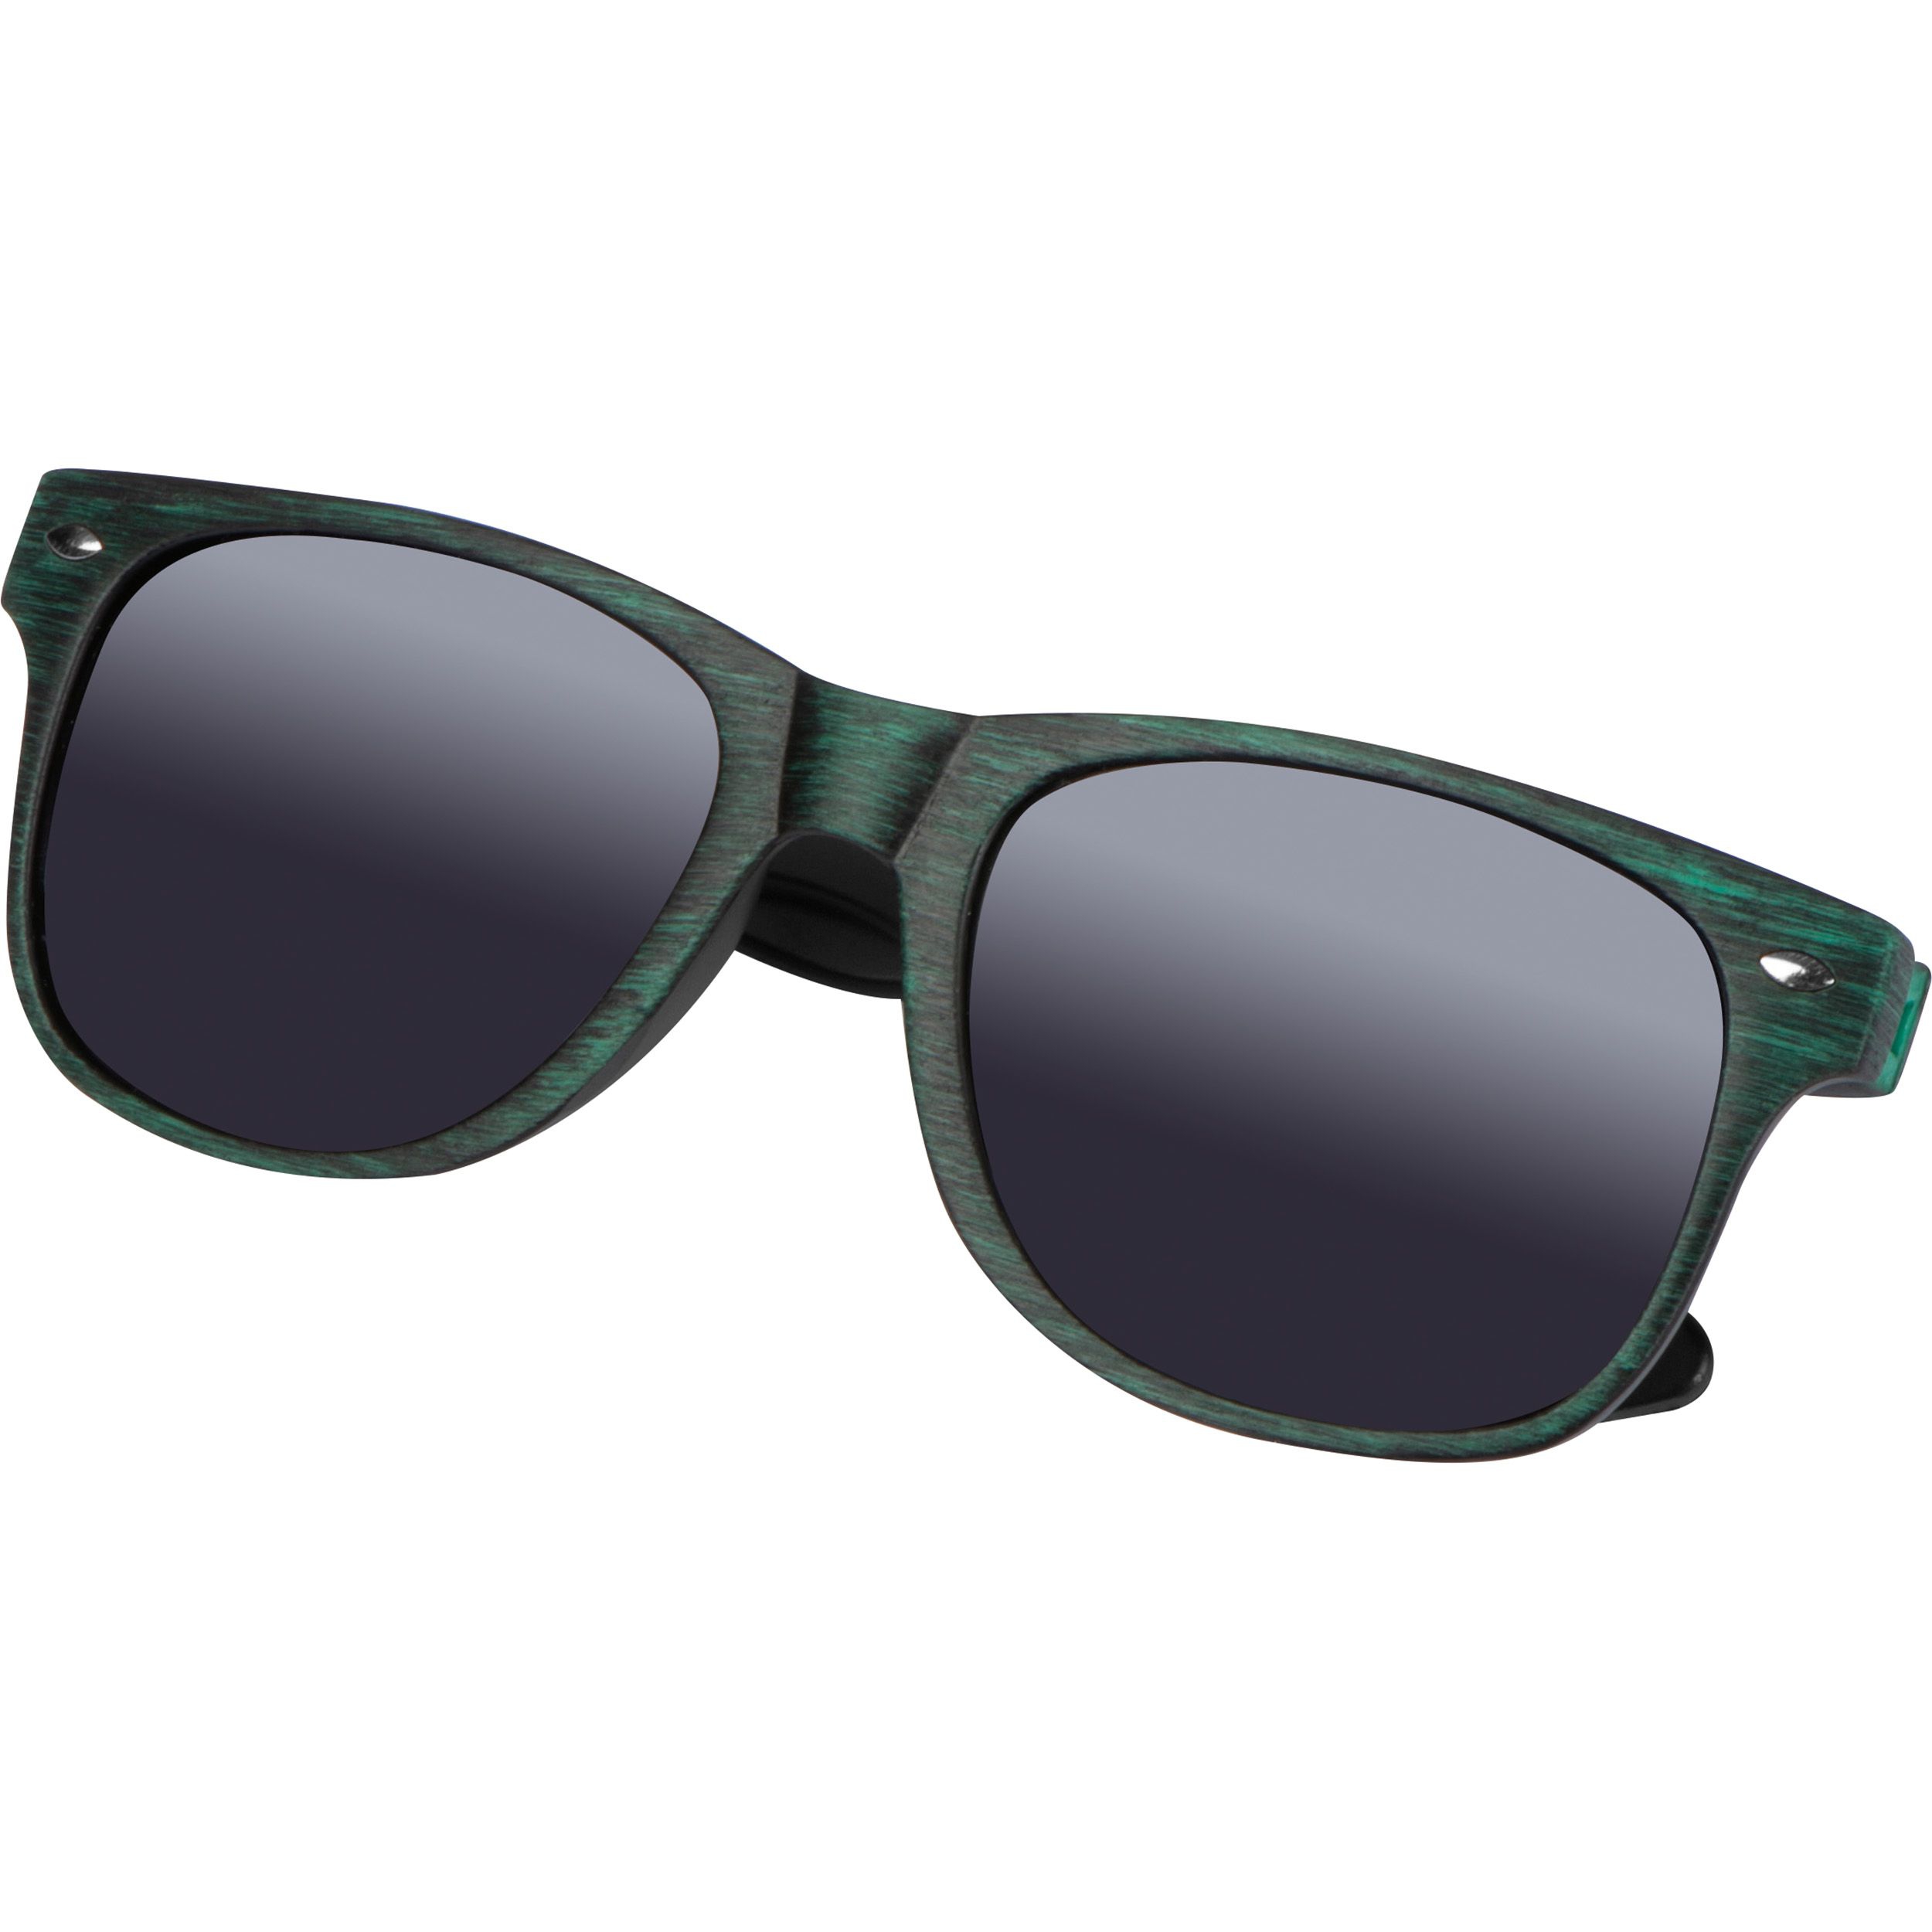 Sonnenbrille mit UV 400 Schutz, grün